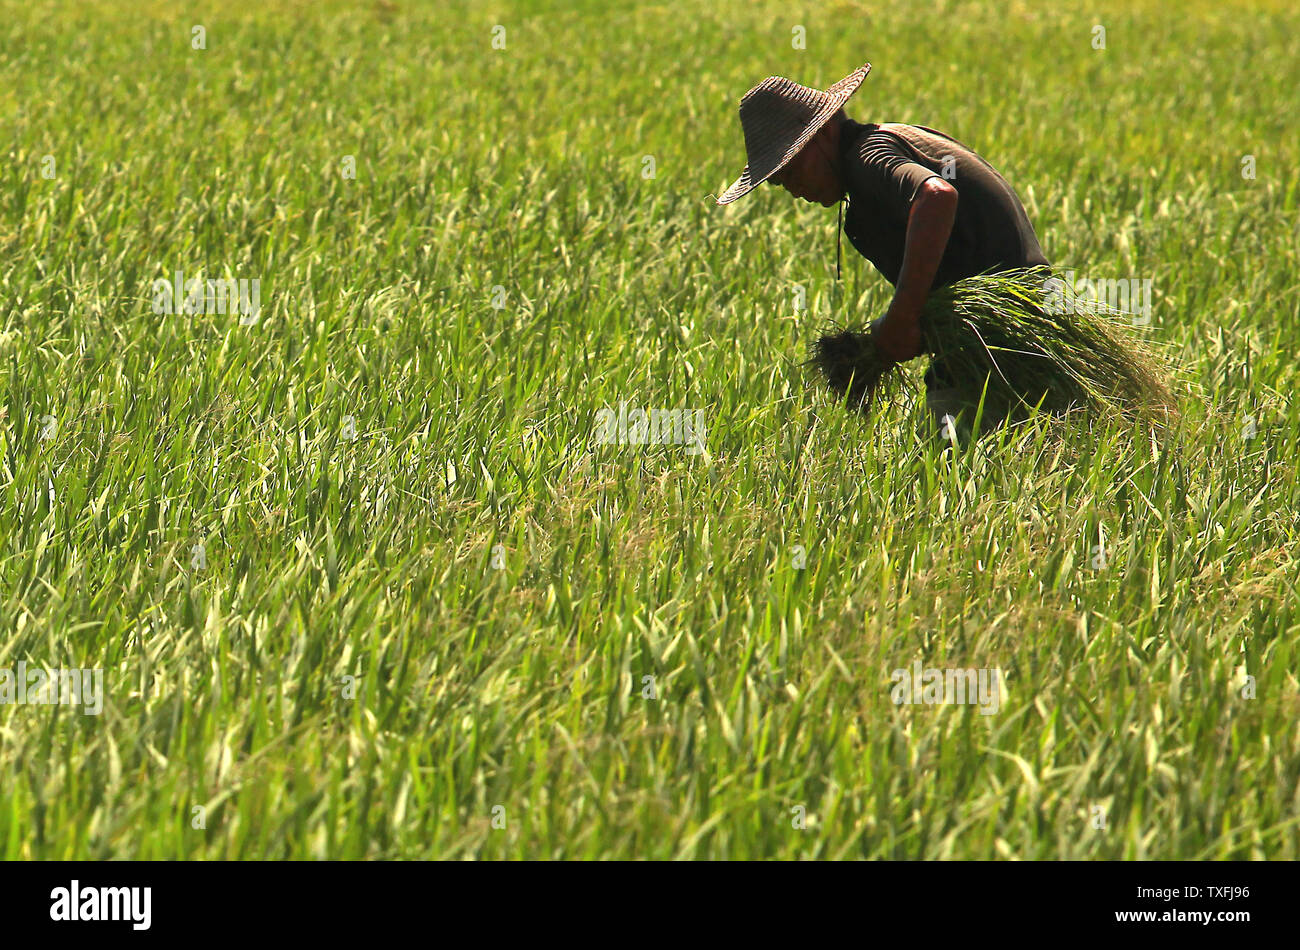 Ein chinesischer Bauer holt etwas Reis pflanzen in einem Feld im Beihai, einer Küstenstadt im Süden der Provinz Guangxi, China am 5. September 2014. Obwohl China rasch seine Wirtschaft durch internationalen Handel gestärkt hat, es ist noch immer ein Entwicklungsland aufgrund der Tatsache, dass die Mehrheit der Chinesen haben einen niedrigeren Lebensstandard als die entwickelten Länder. UPI/Stephen Rasierer Stockfoto